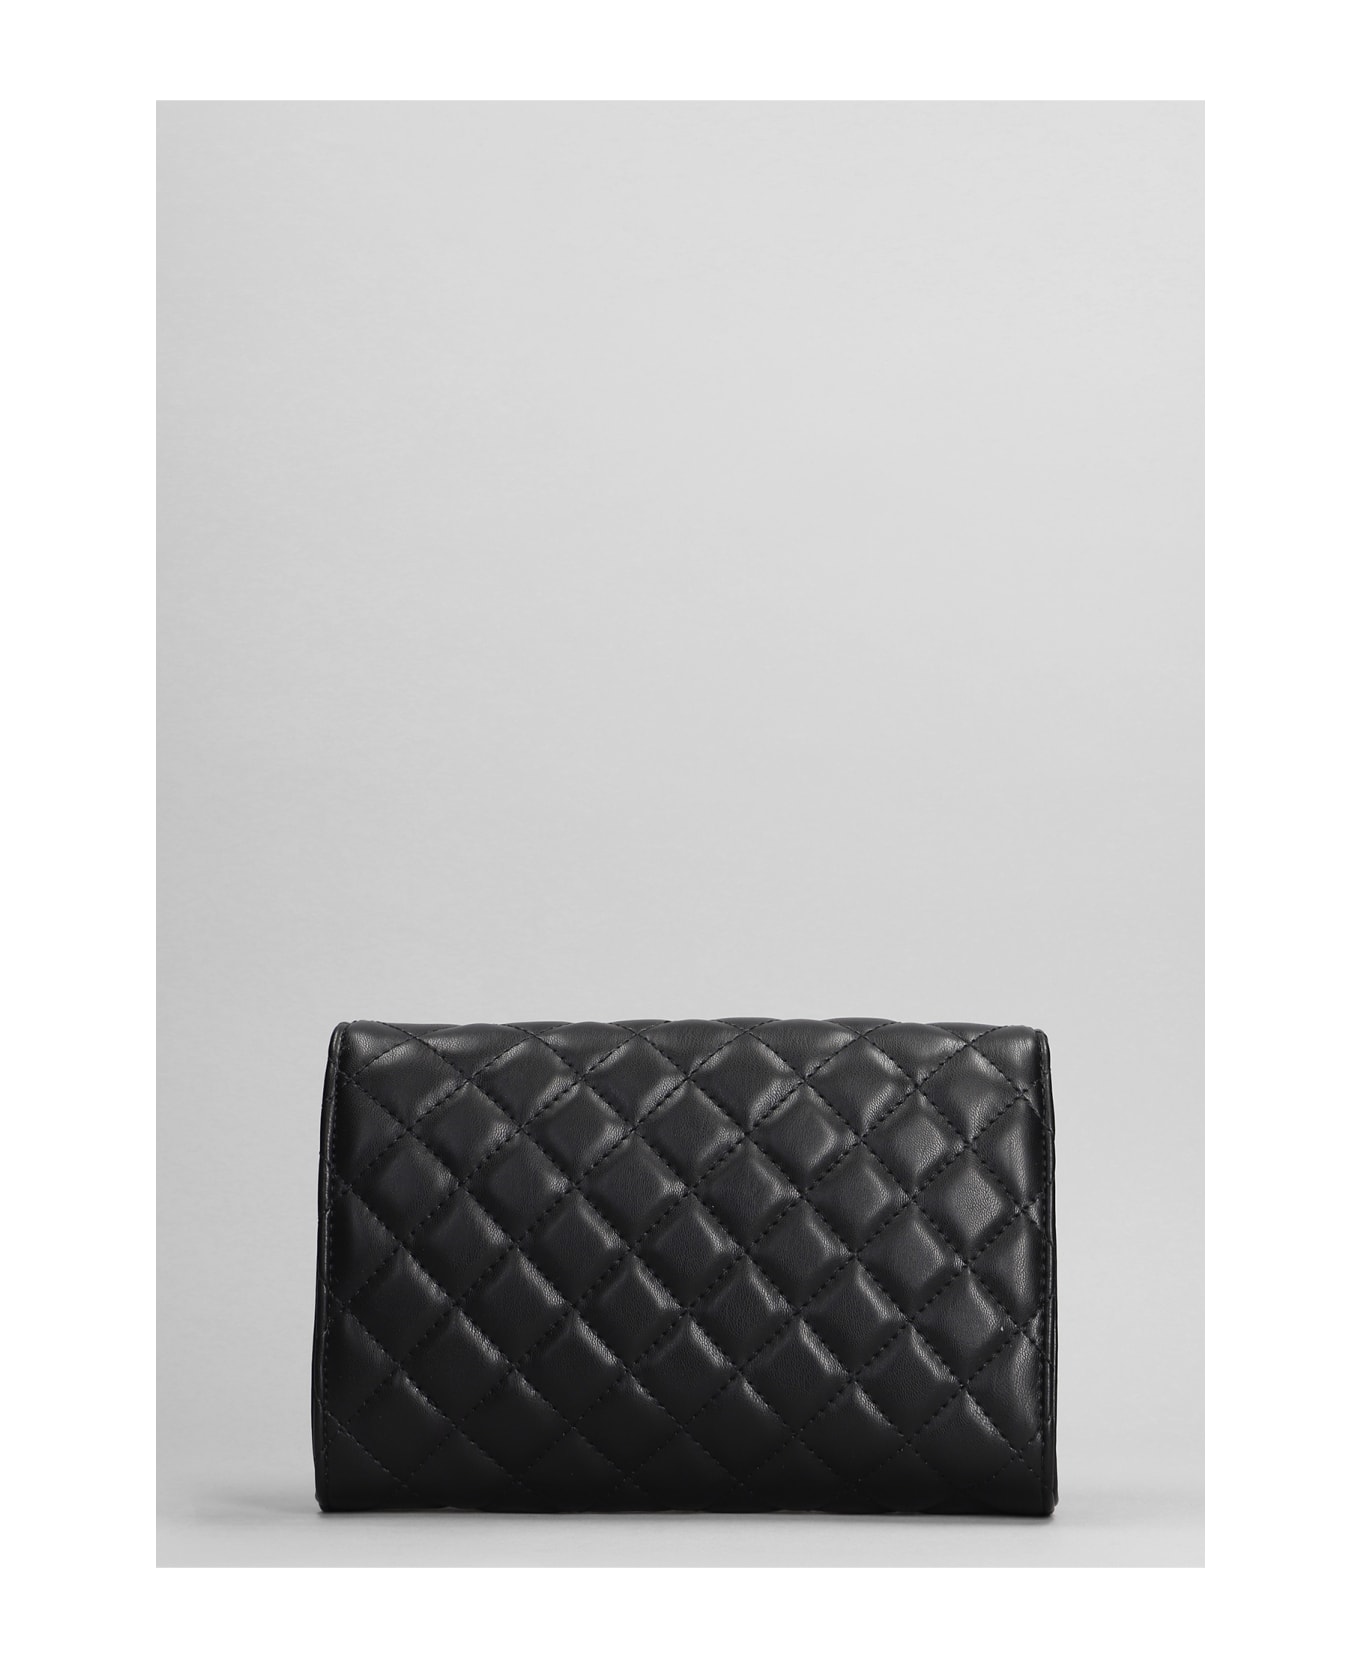 Marc Ellis Leos Shoulder Bag In Black Leather - black